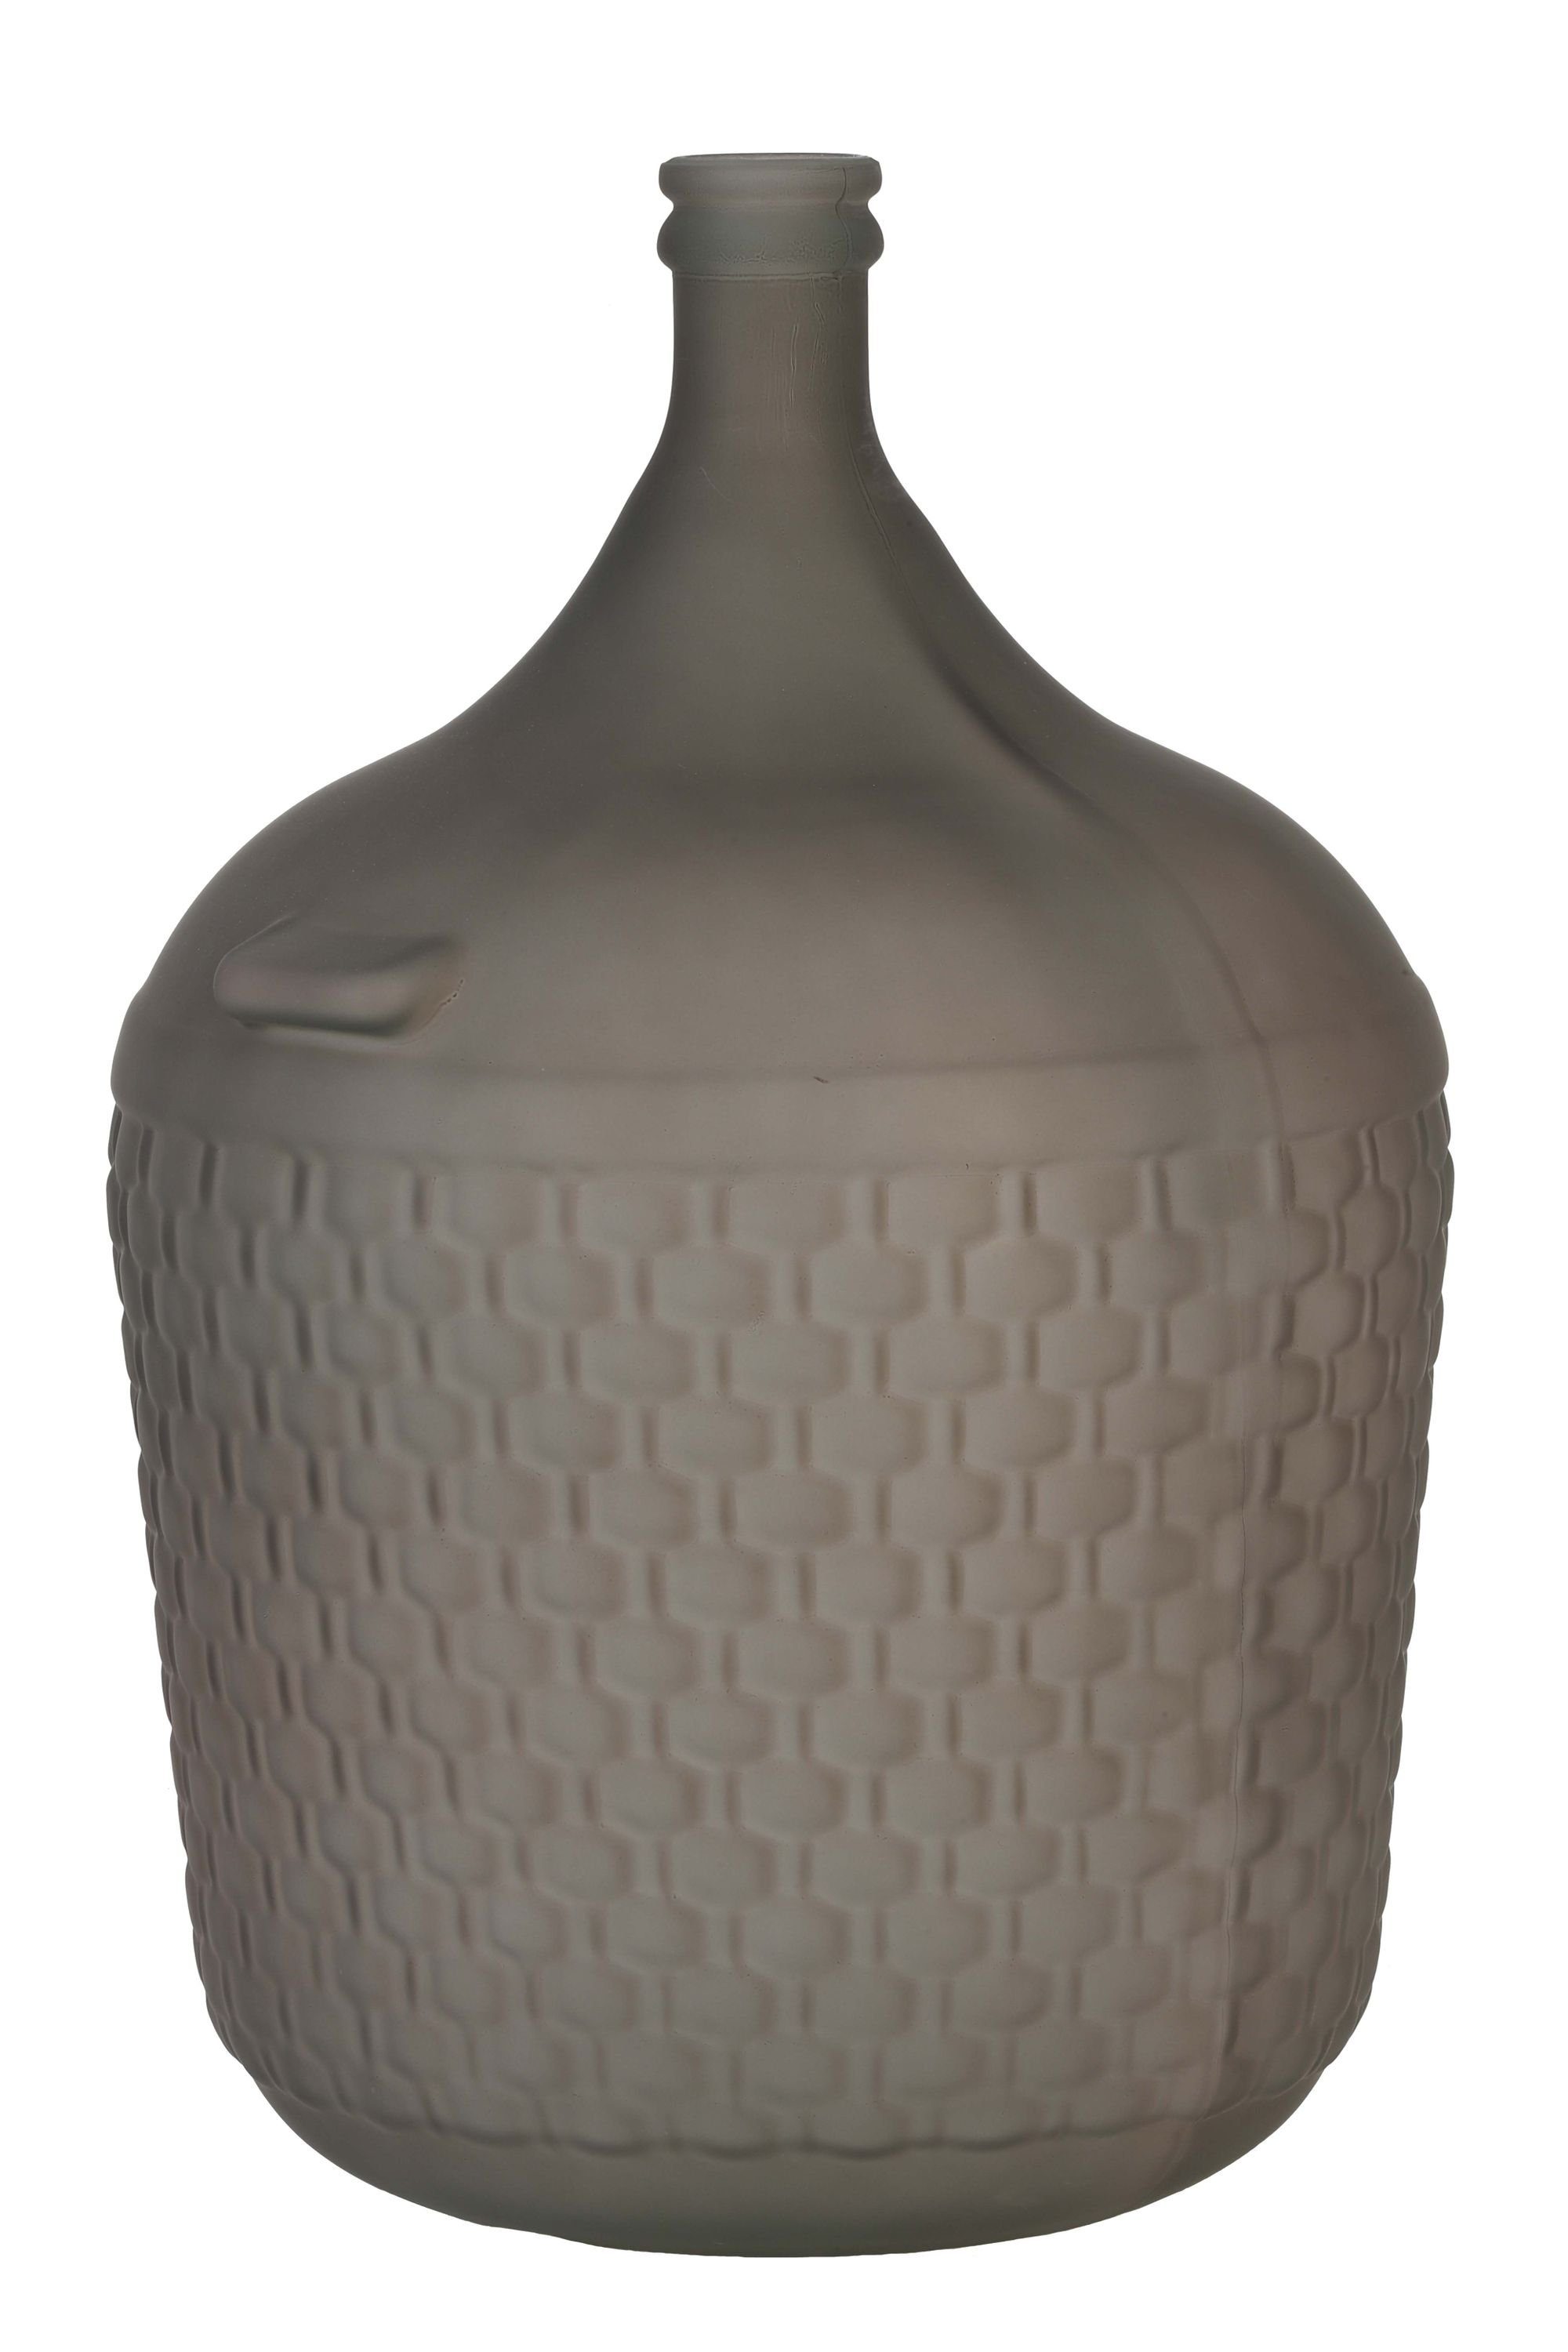 Light Dekoration, Tischvase & Vase matt braun, Weinballon, Dekovase Glasballon Dekovase Ø40cm, bauchig Living